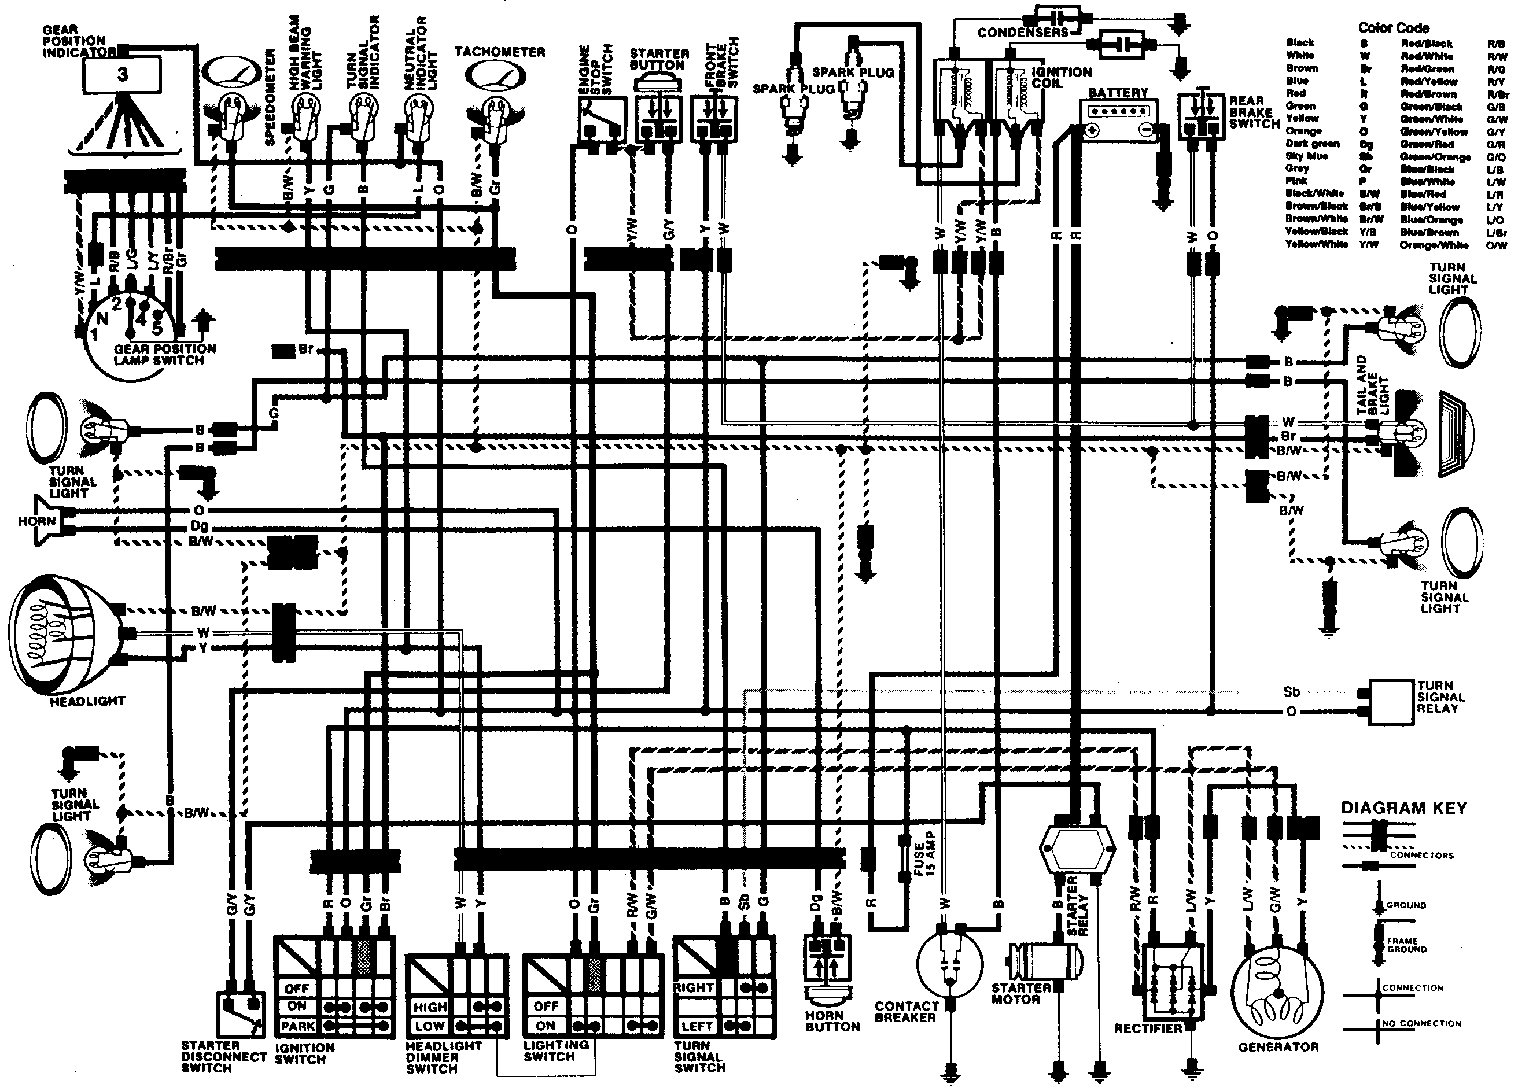 1980 suzuki gs450 wiring diagram